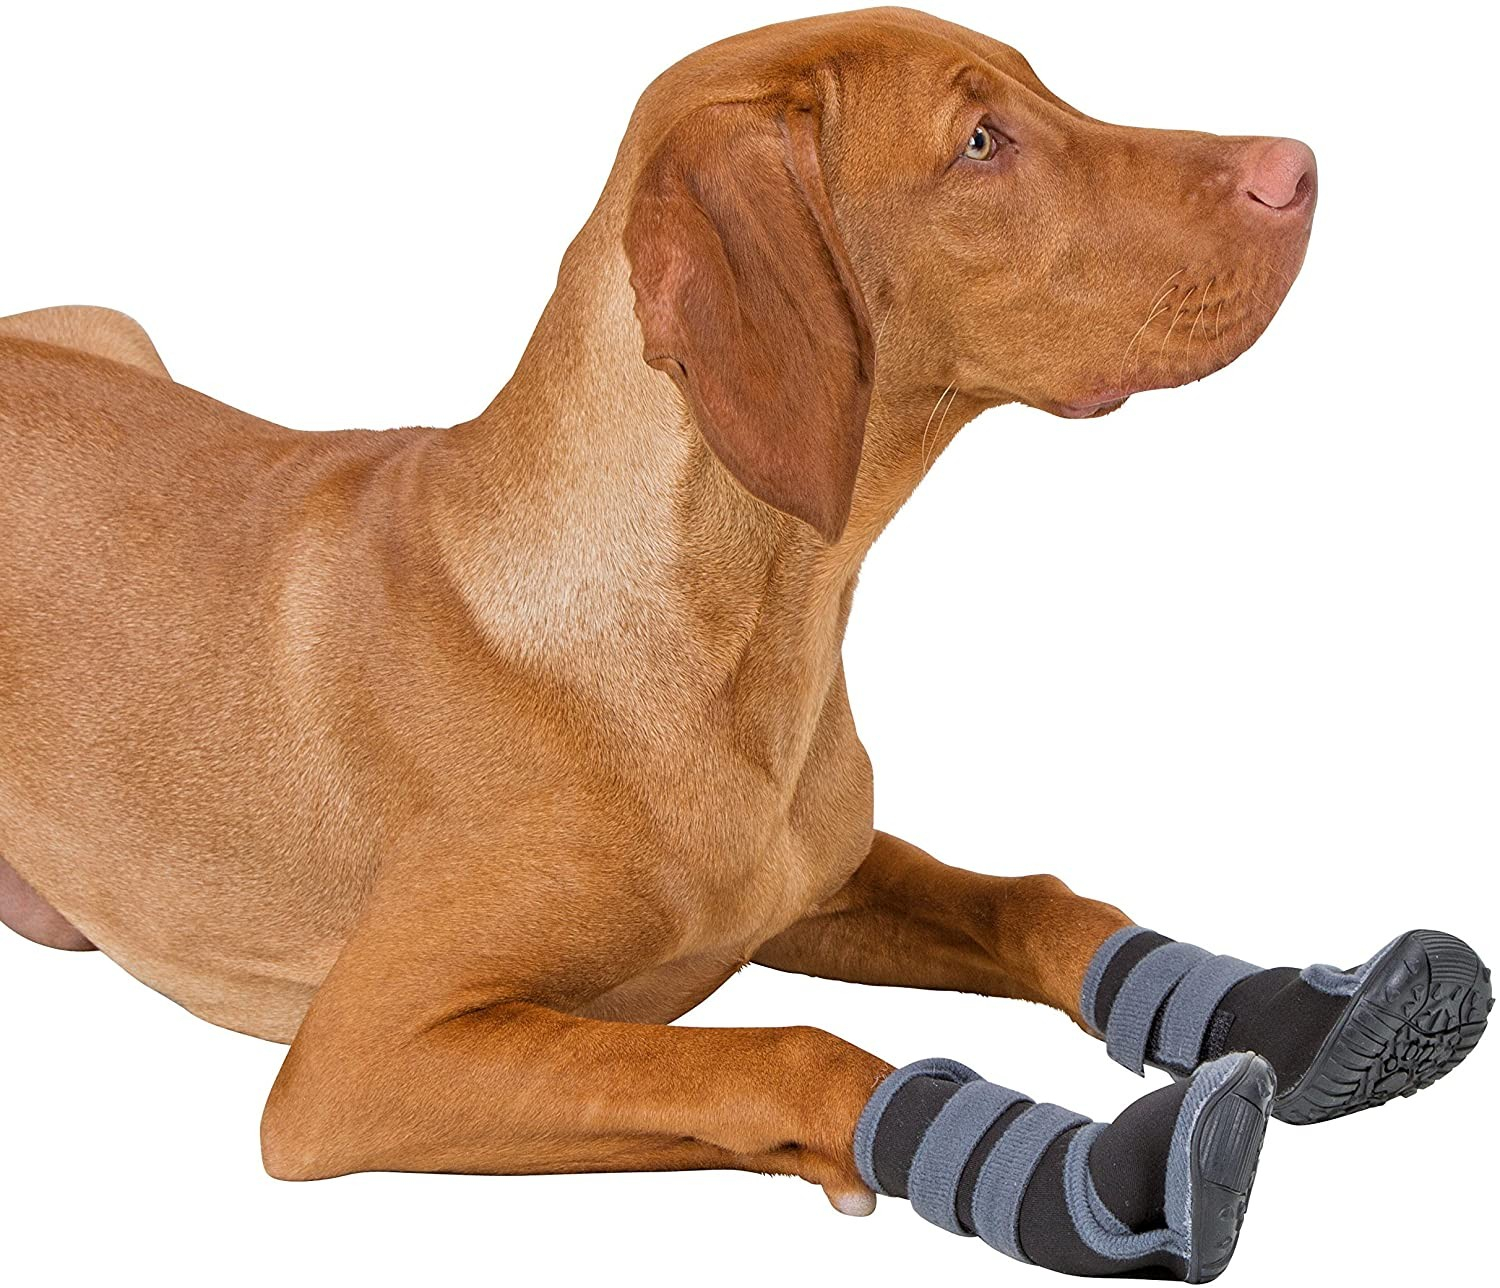 Chaussures Active gris/noir pour chien